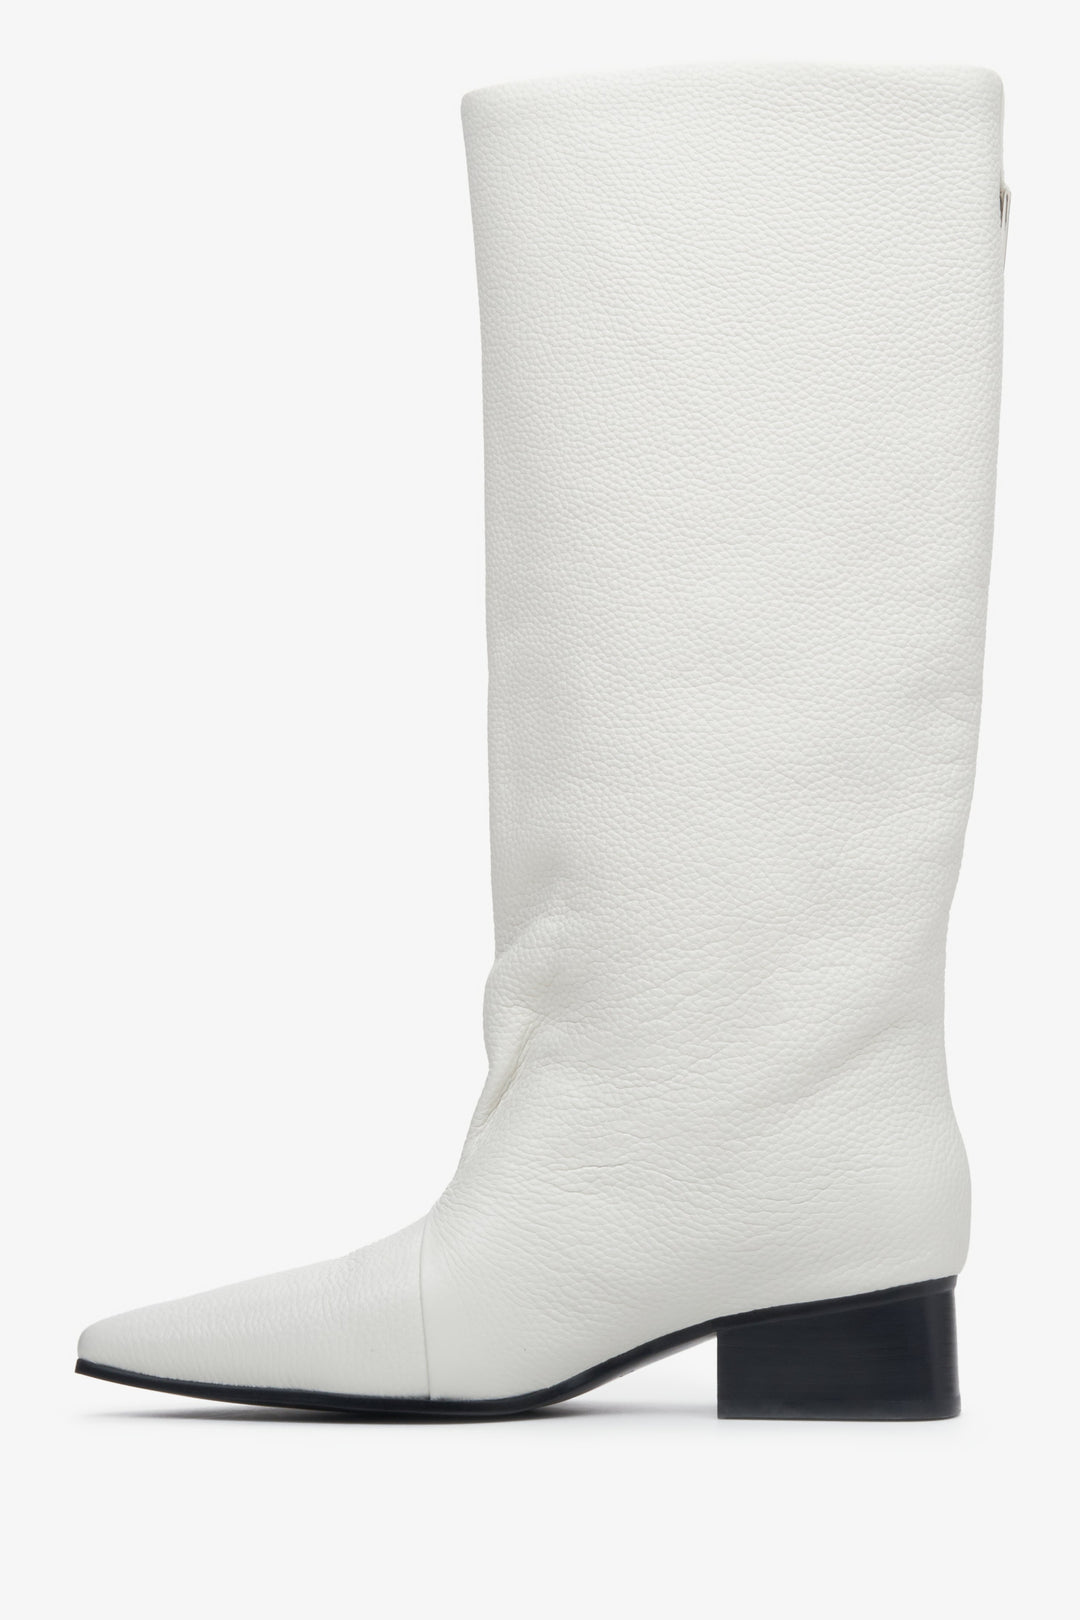 Damskie, skórzane kozaki w kolorze białym Estro z szeroką cholewą - prezentacja profilu buta.